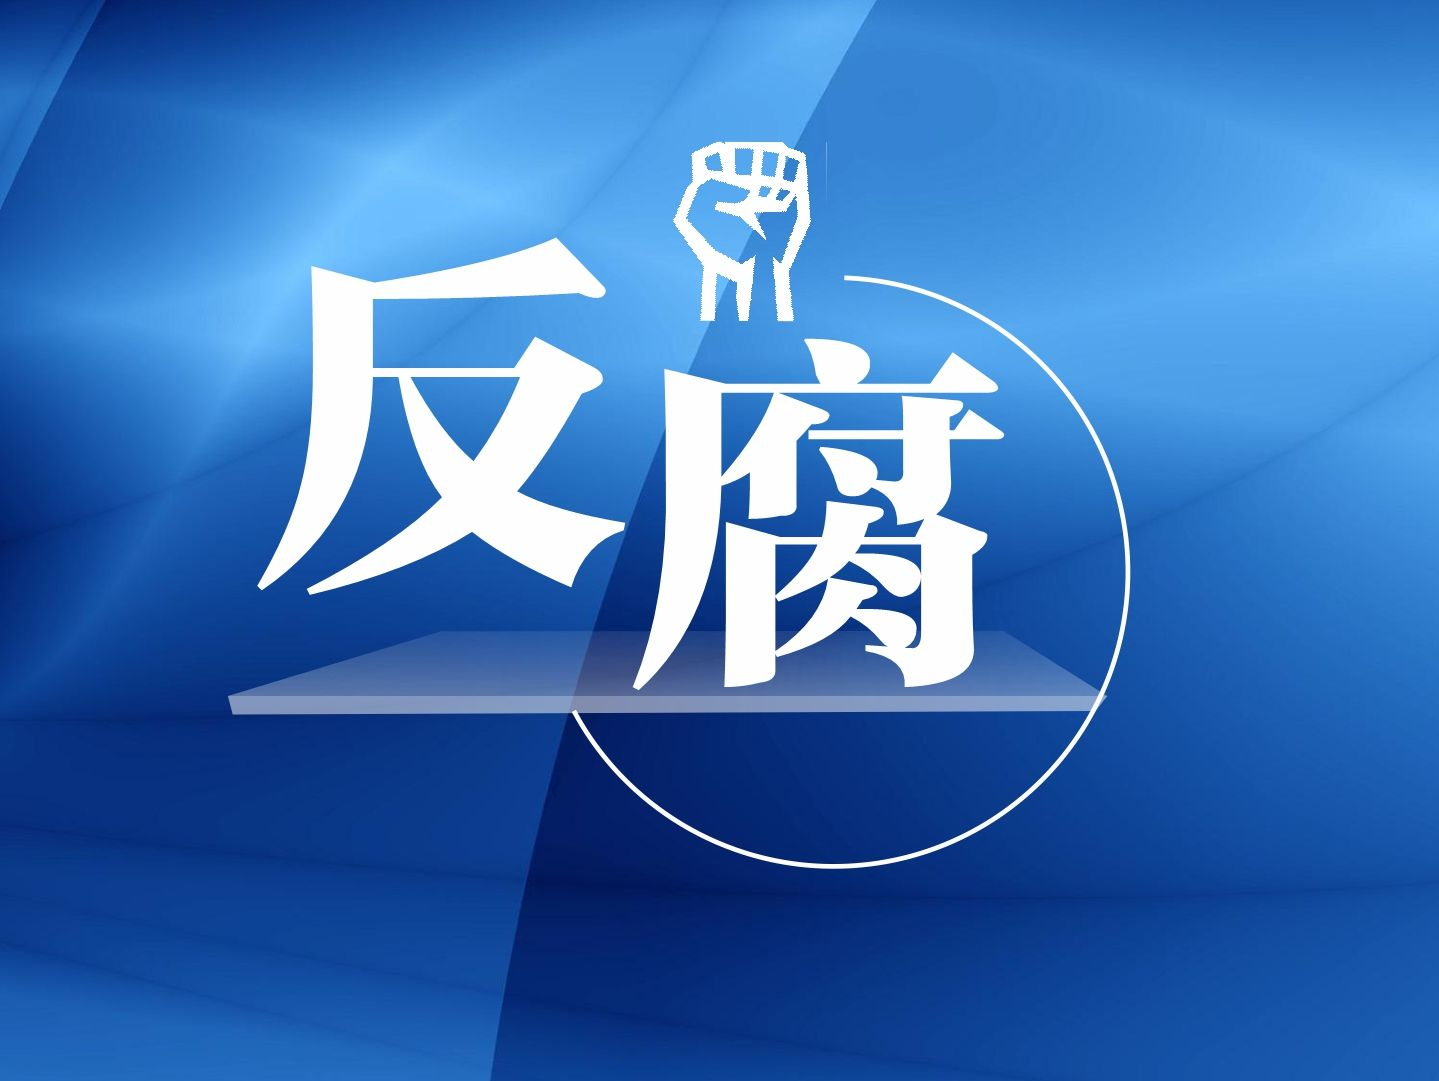 广东省委第二巡视组组长苏全贵主动投案接受纪律审查和监察调查